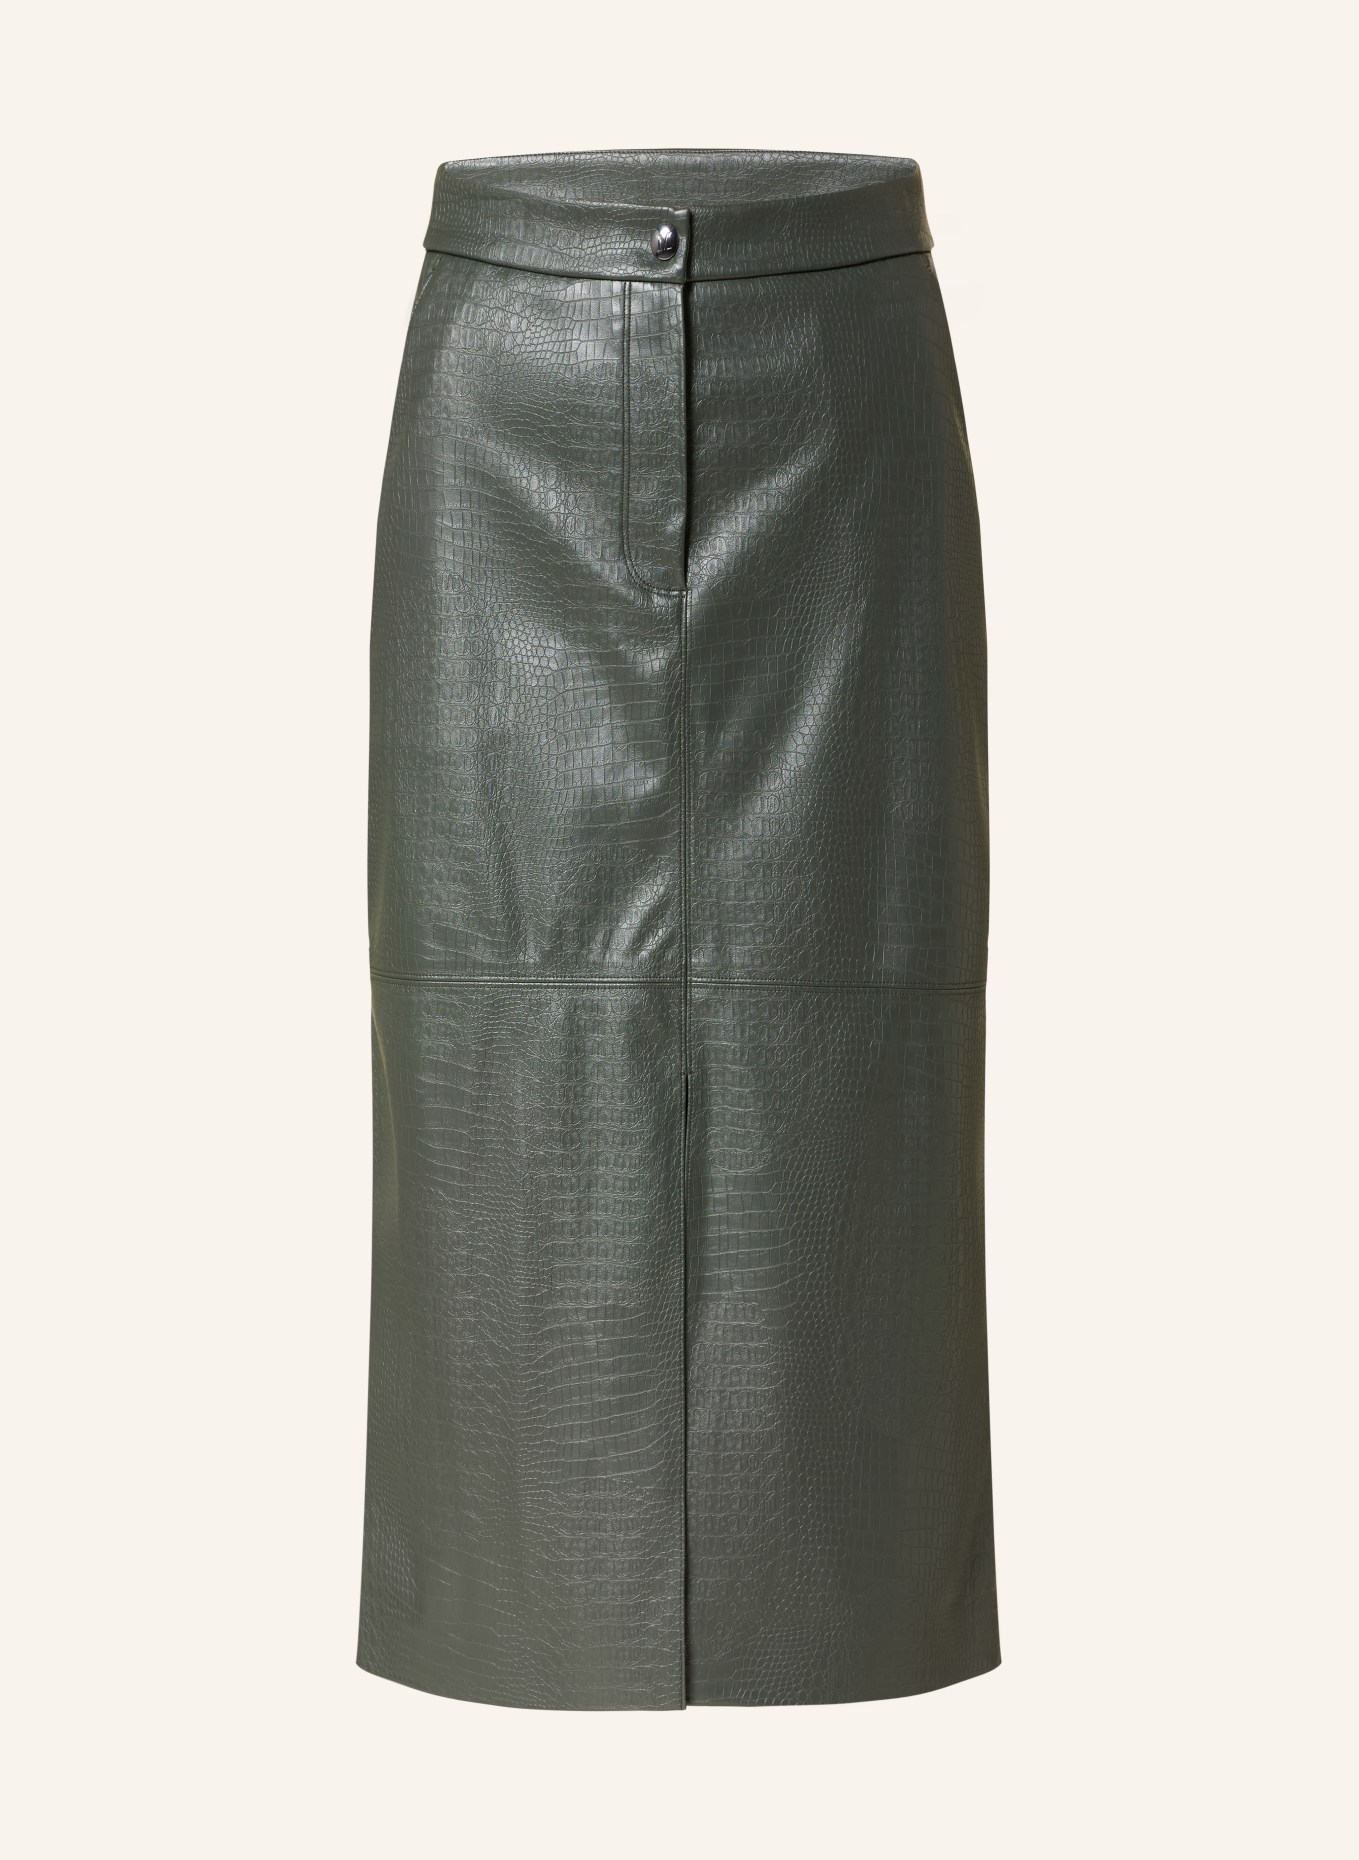 MaxMara LEISURE Skirt ETHEL in leather look in dark green